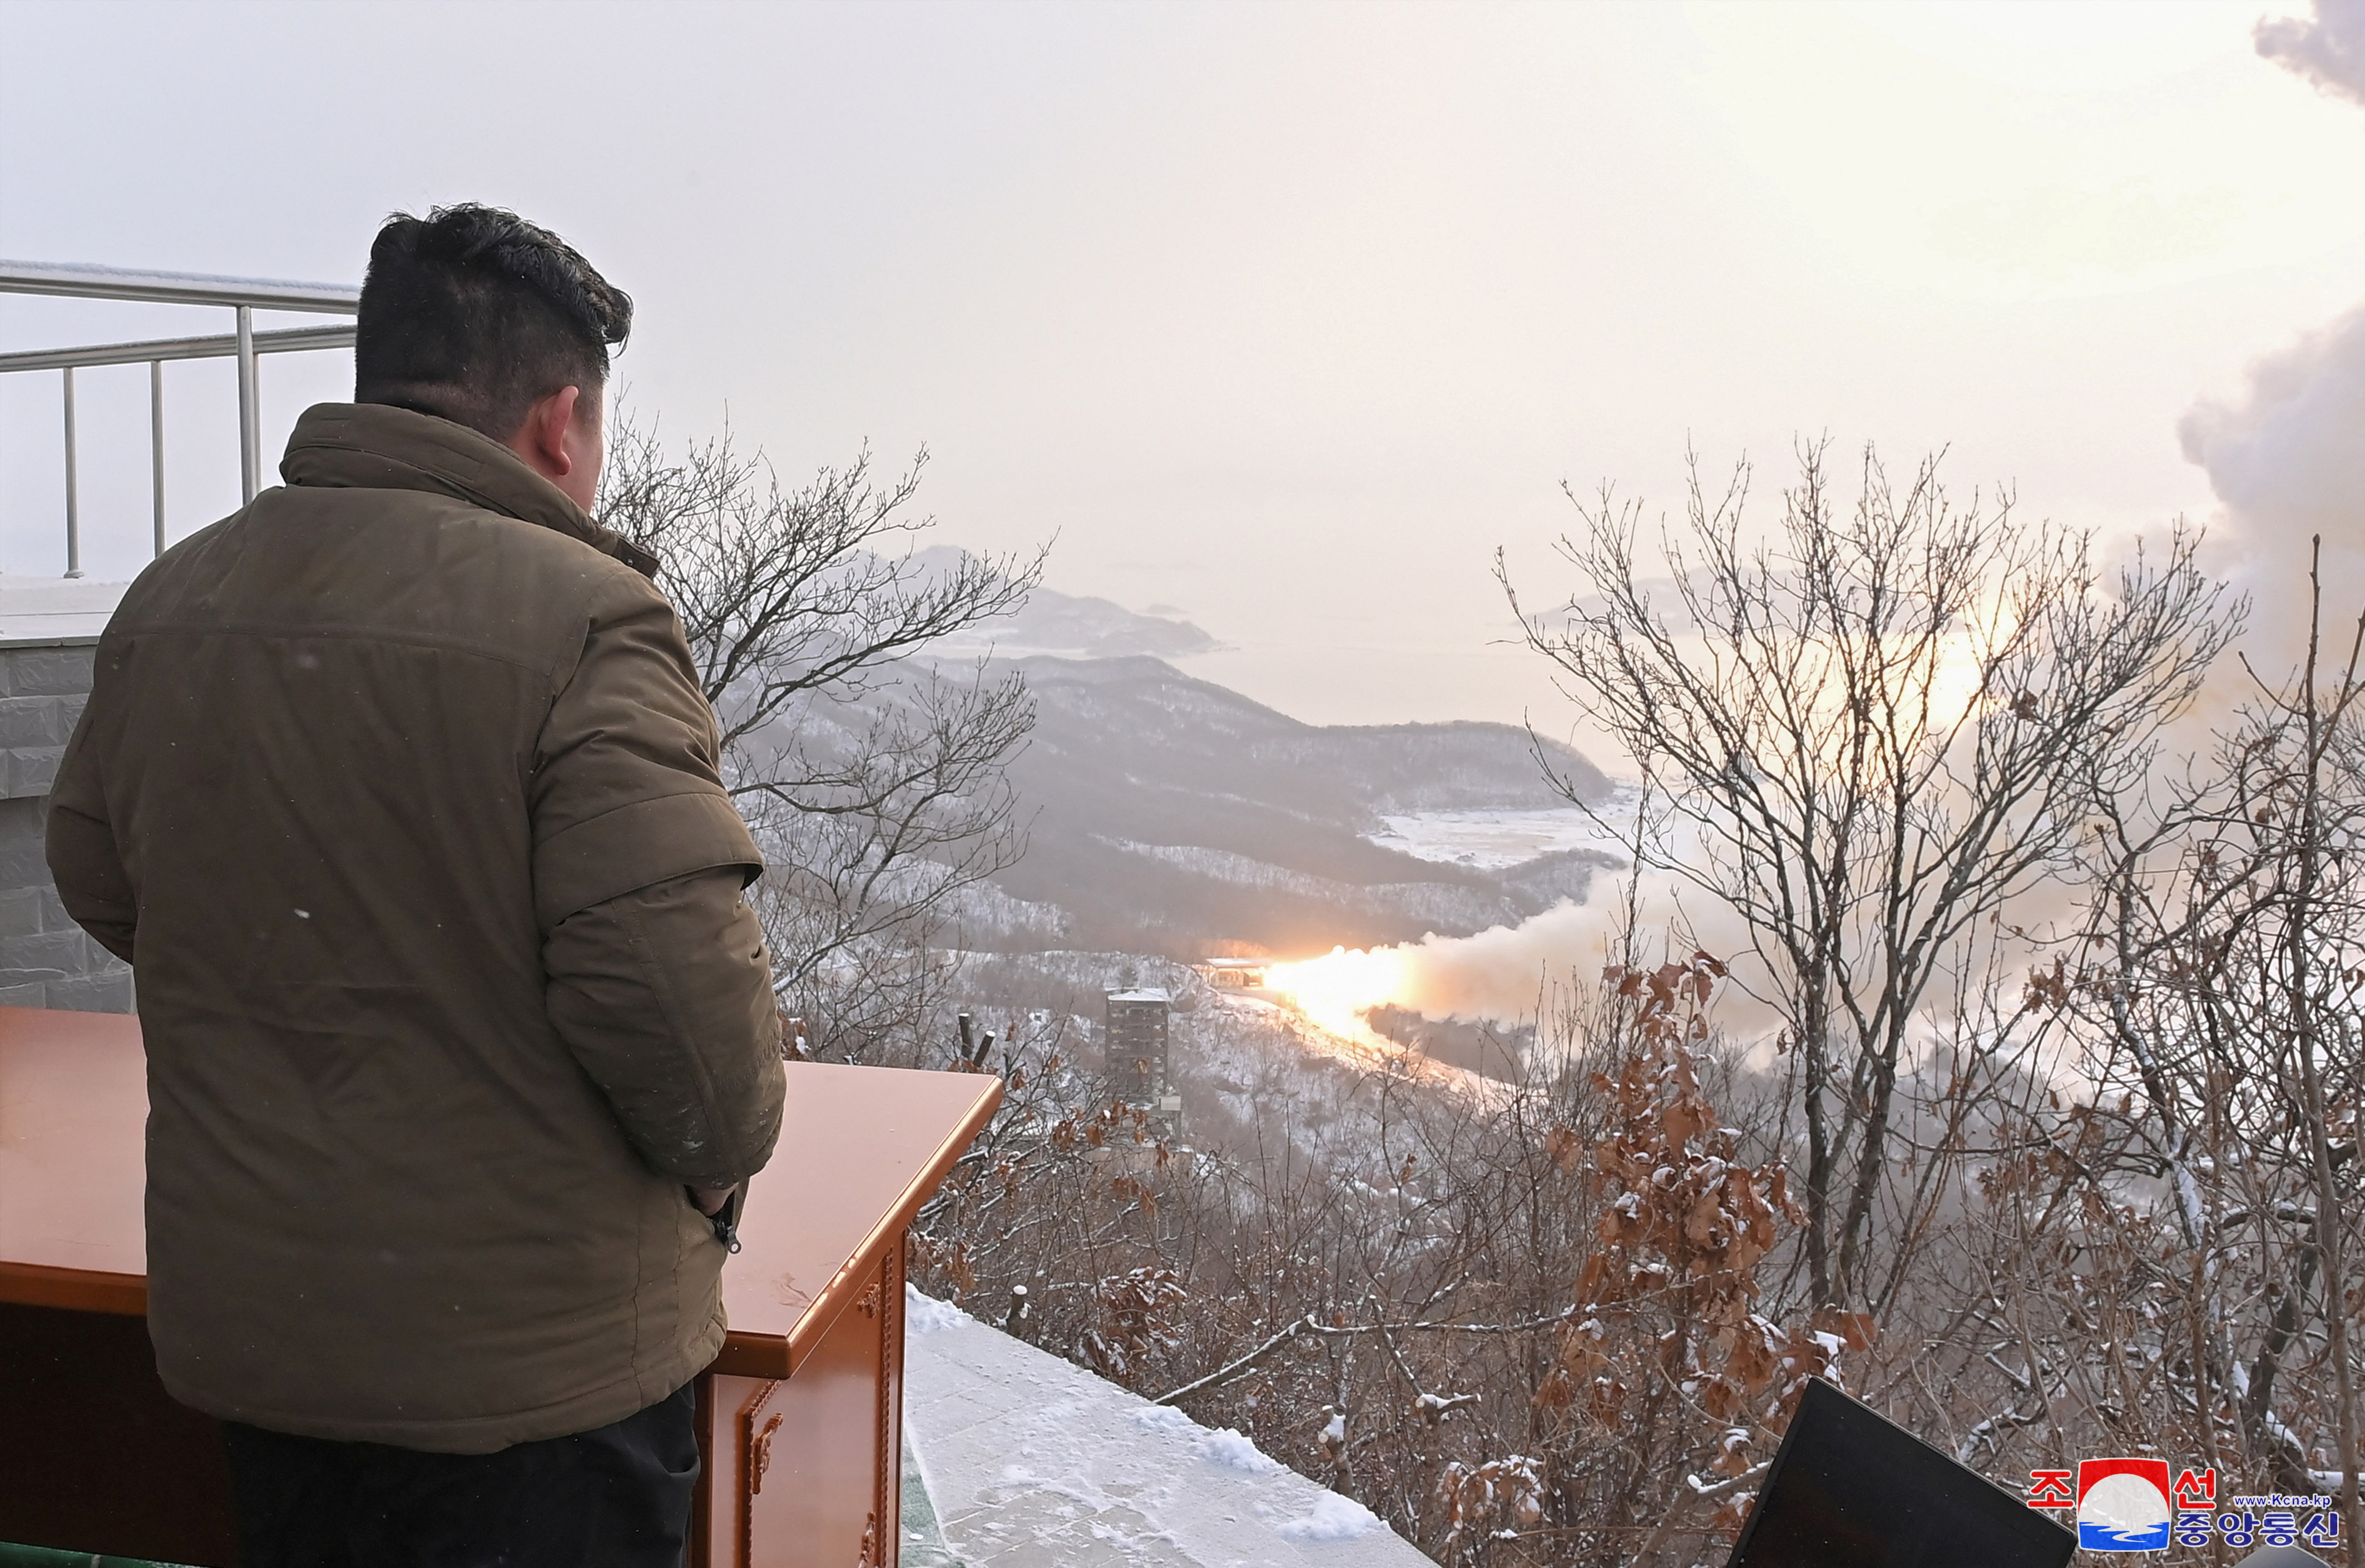 Corea del Sur lanza primer misil balistico con alcance de 500 km - amenaza directa a Corea del Norte PDD6MUQOMLT4EUDNOY4EAPHEIM